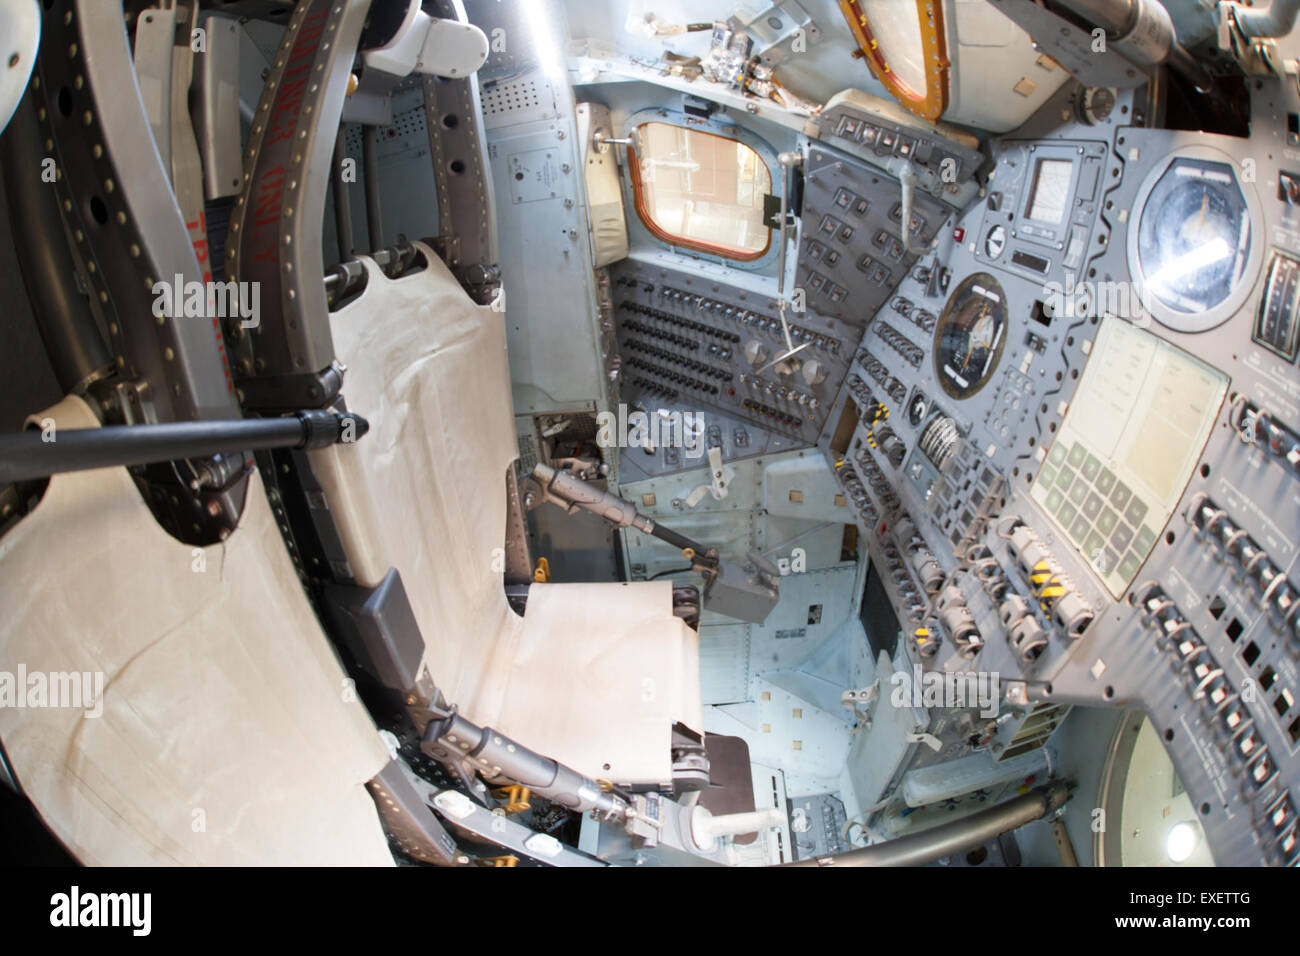 Inside Apollo Command Module 17